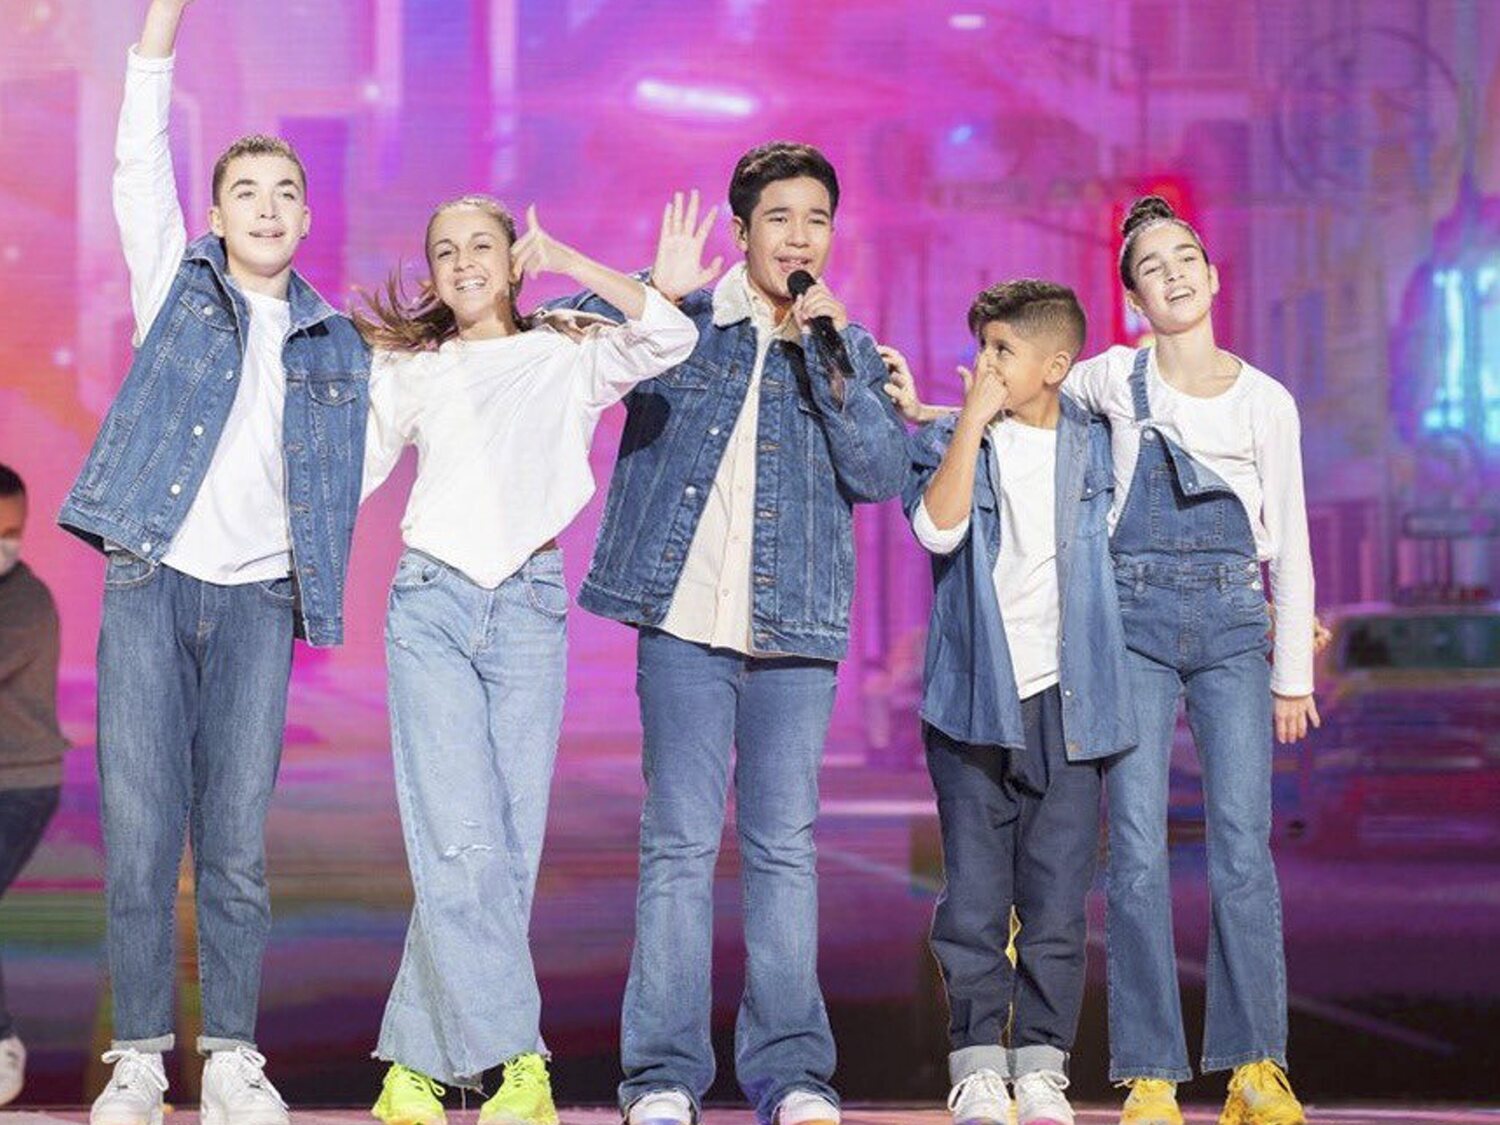 Levi Díaz apura detalles y vestuario en su segundo ensayo previo a Eurovisión Junior 2021